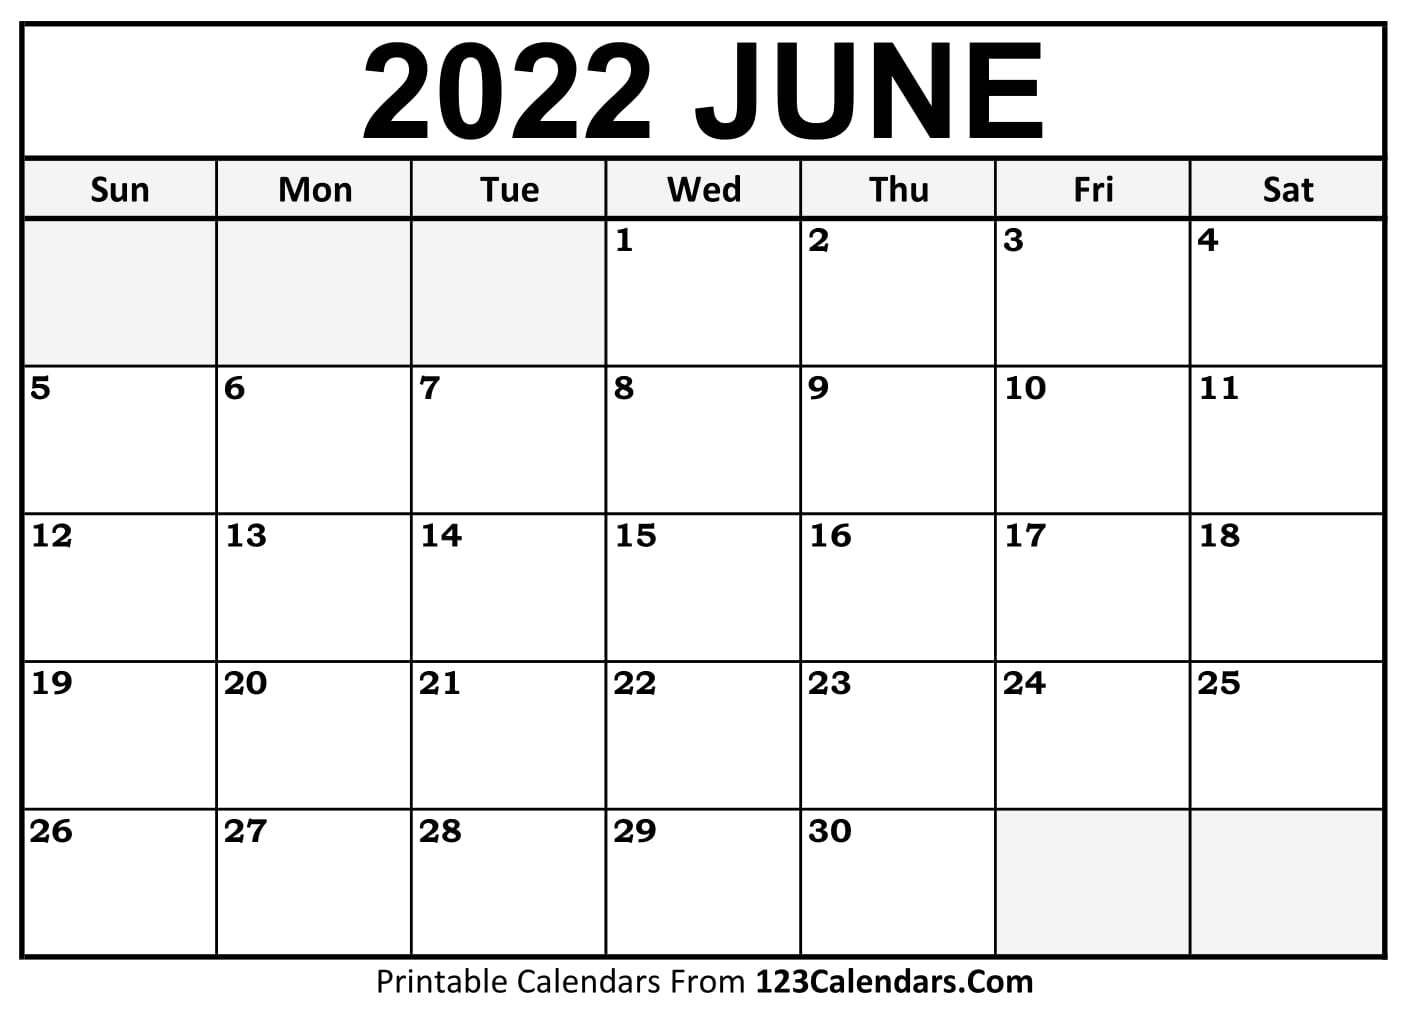 June Calendar Printable 2022 Printable June 2022 Calendar Templates - 123Calendars.com